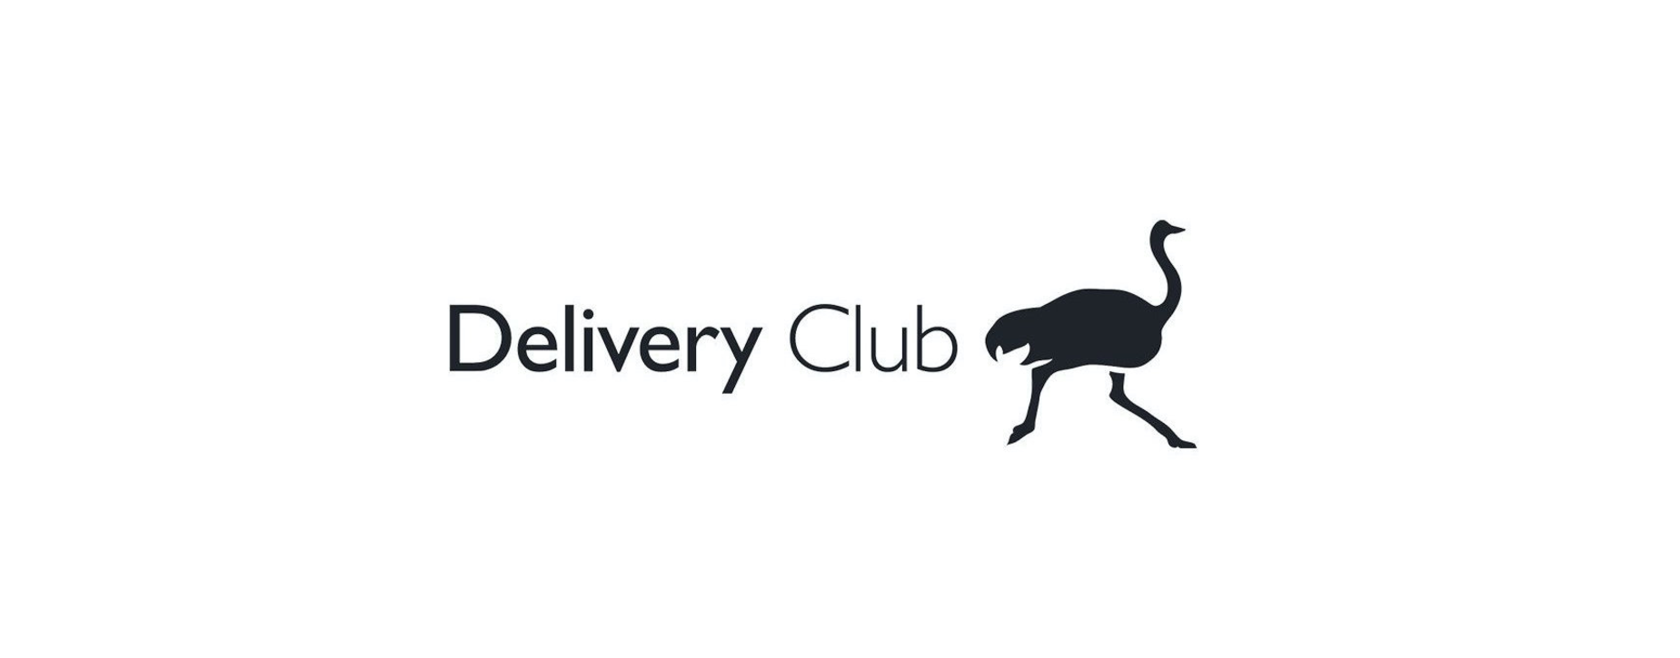 Значок Деливери. Delivery Club лого. Страус Деливери. Деливери клаб на прозрачном фоне. Ин бади